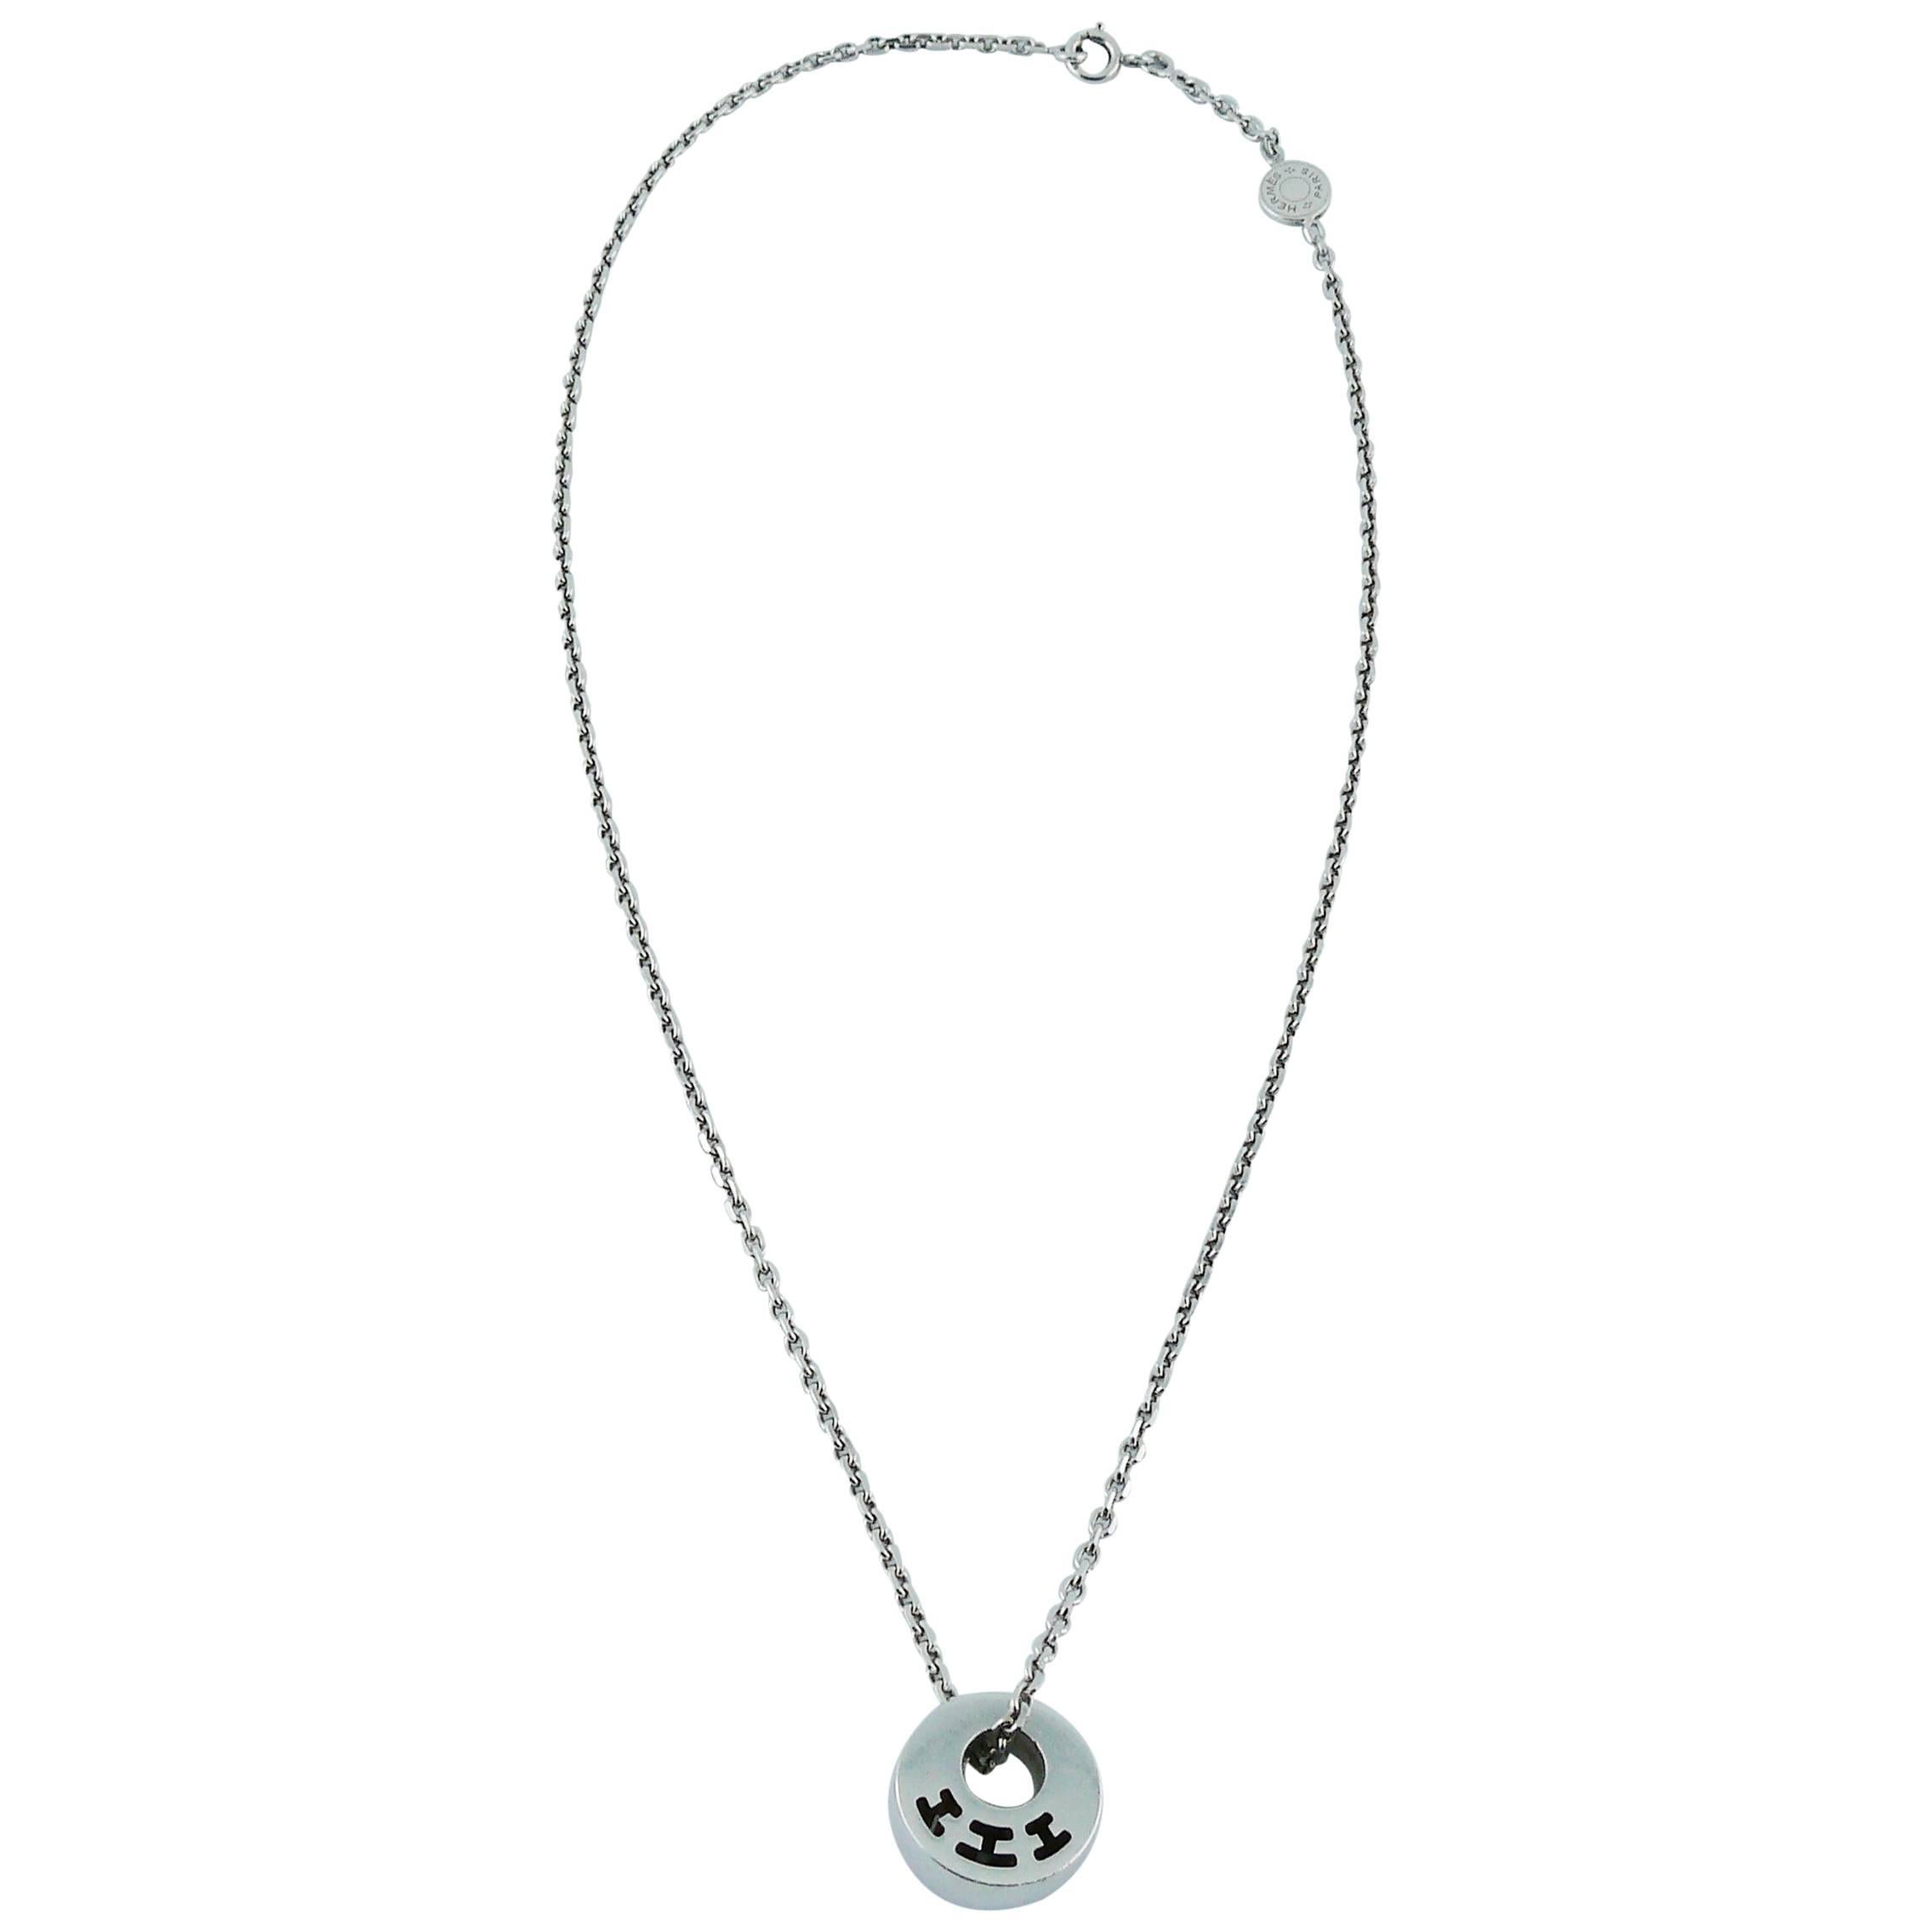 Hermès Clarté Sterling Silver Pendant Necklace